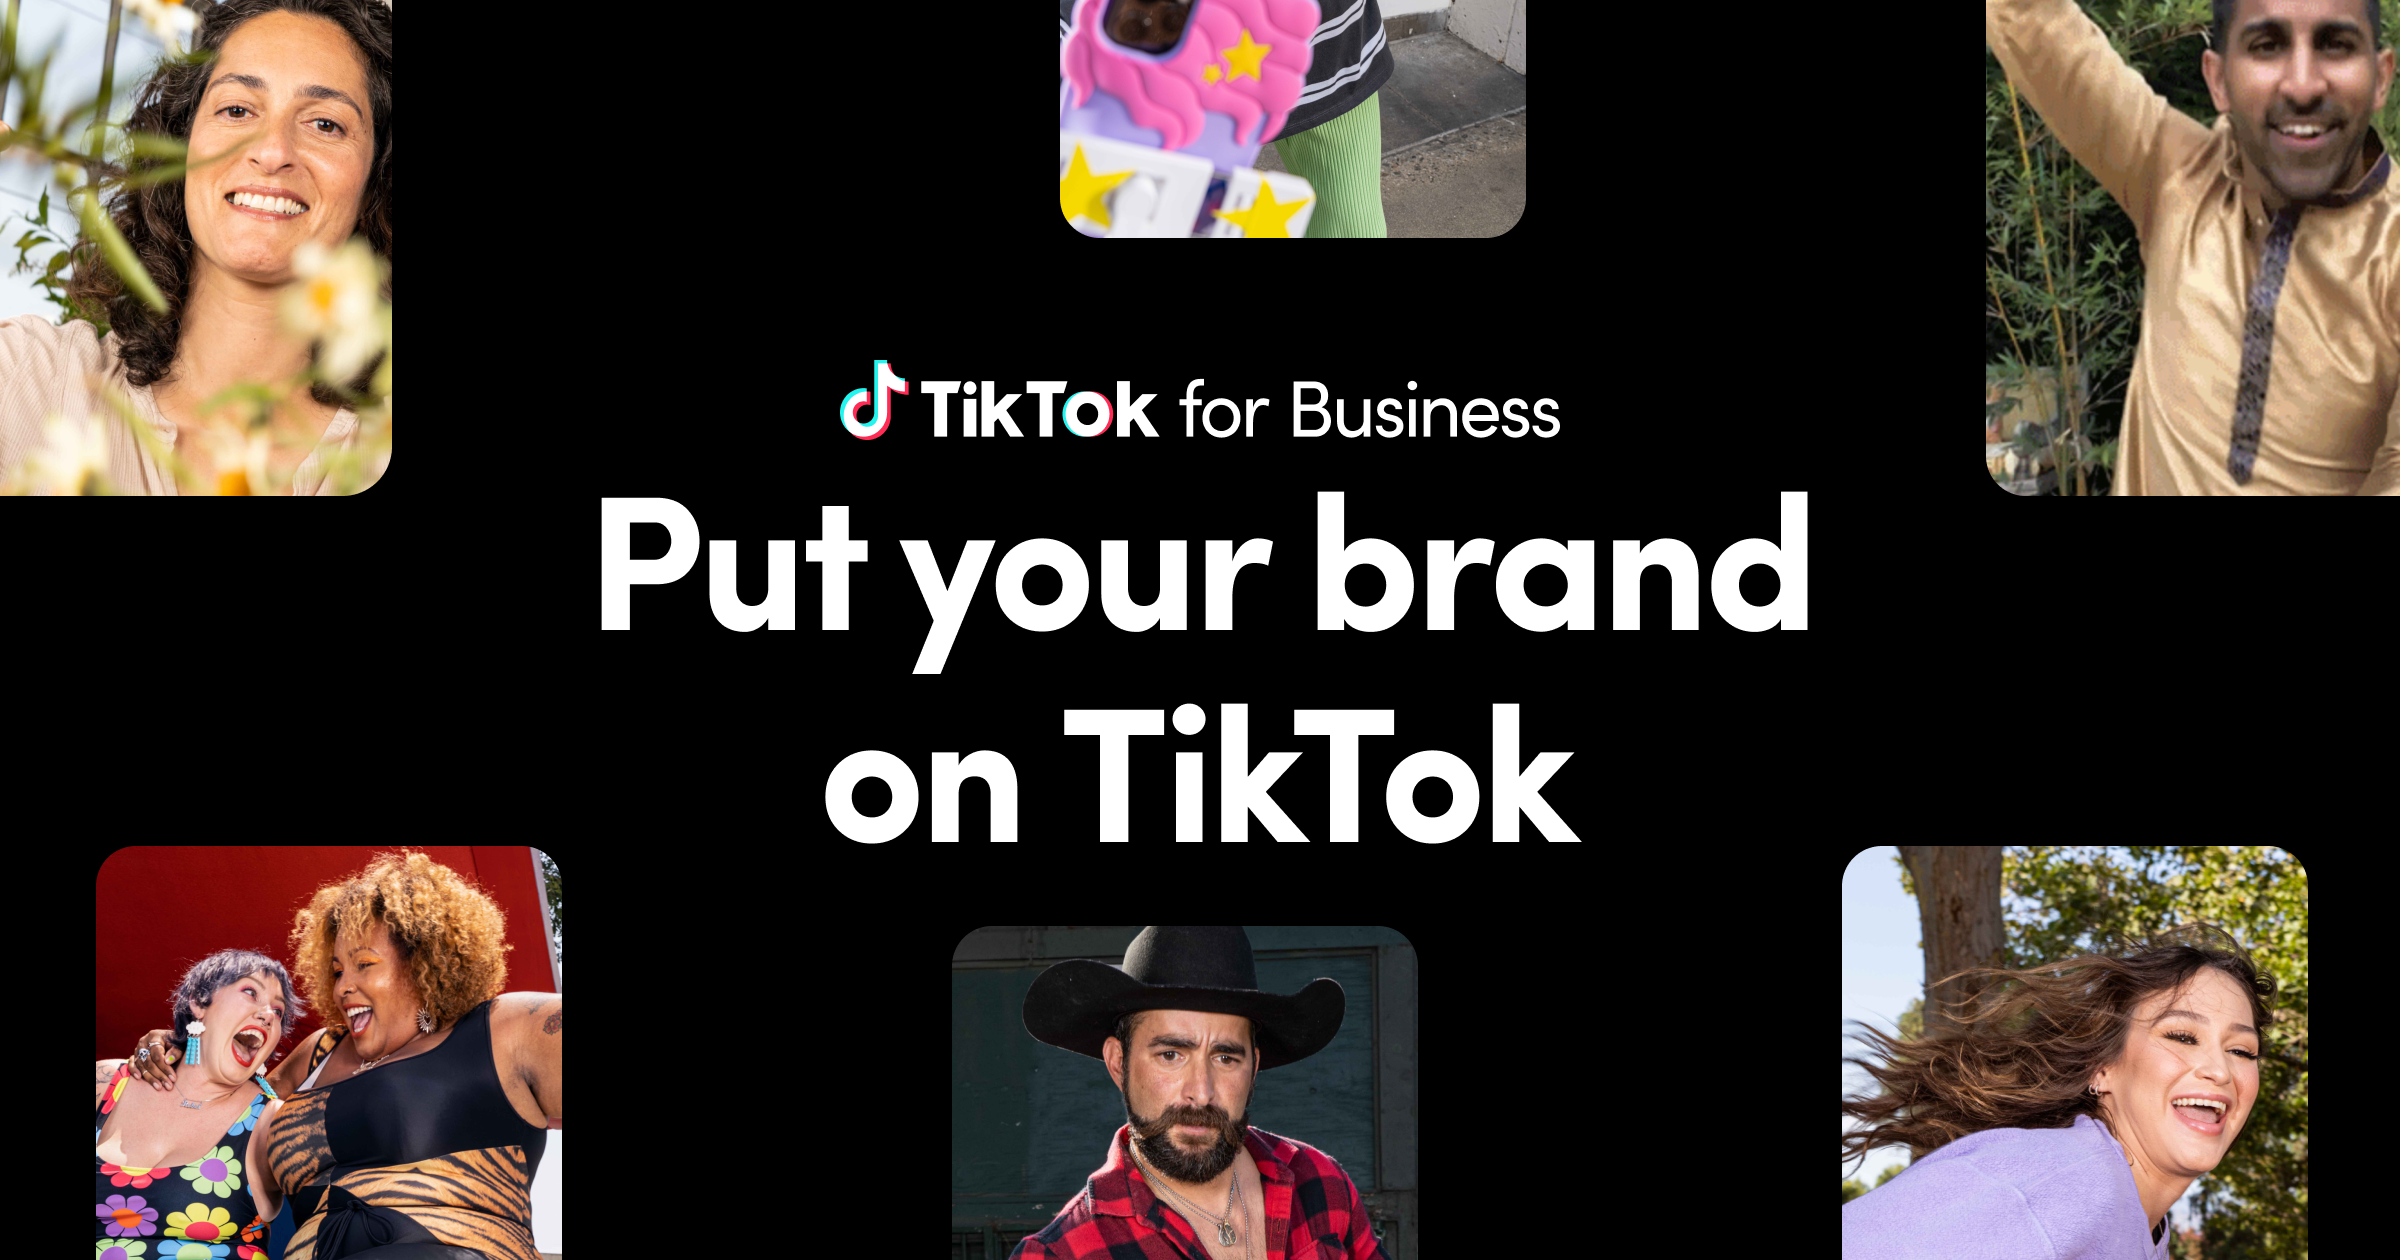 www.tiktok.com